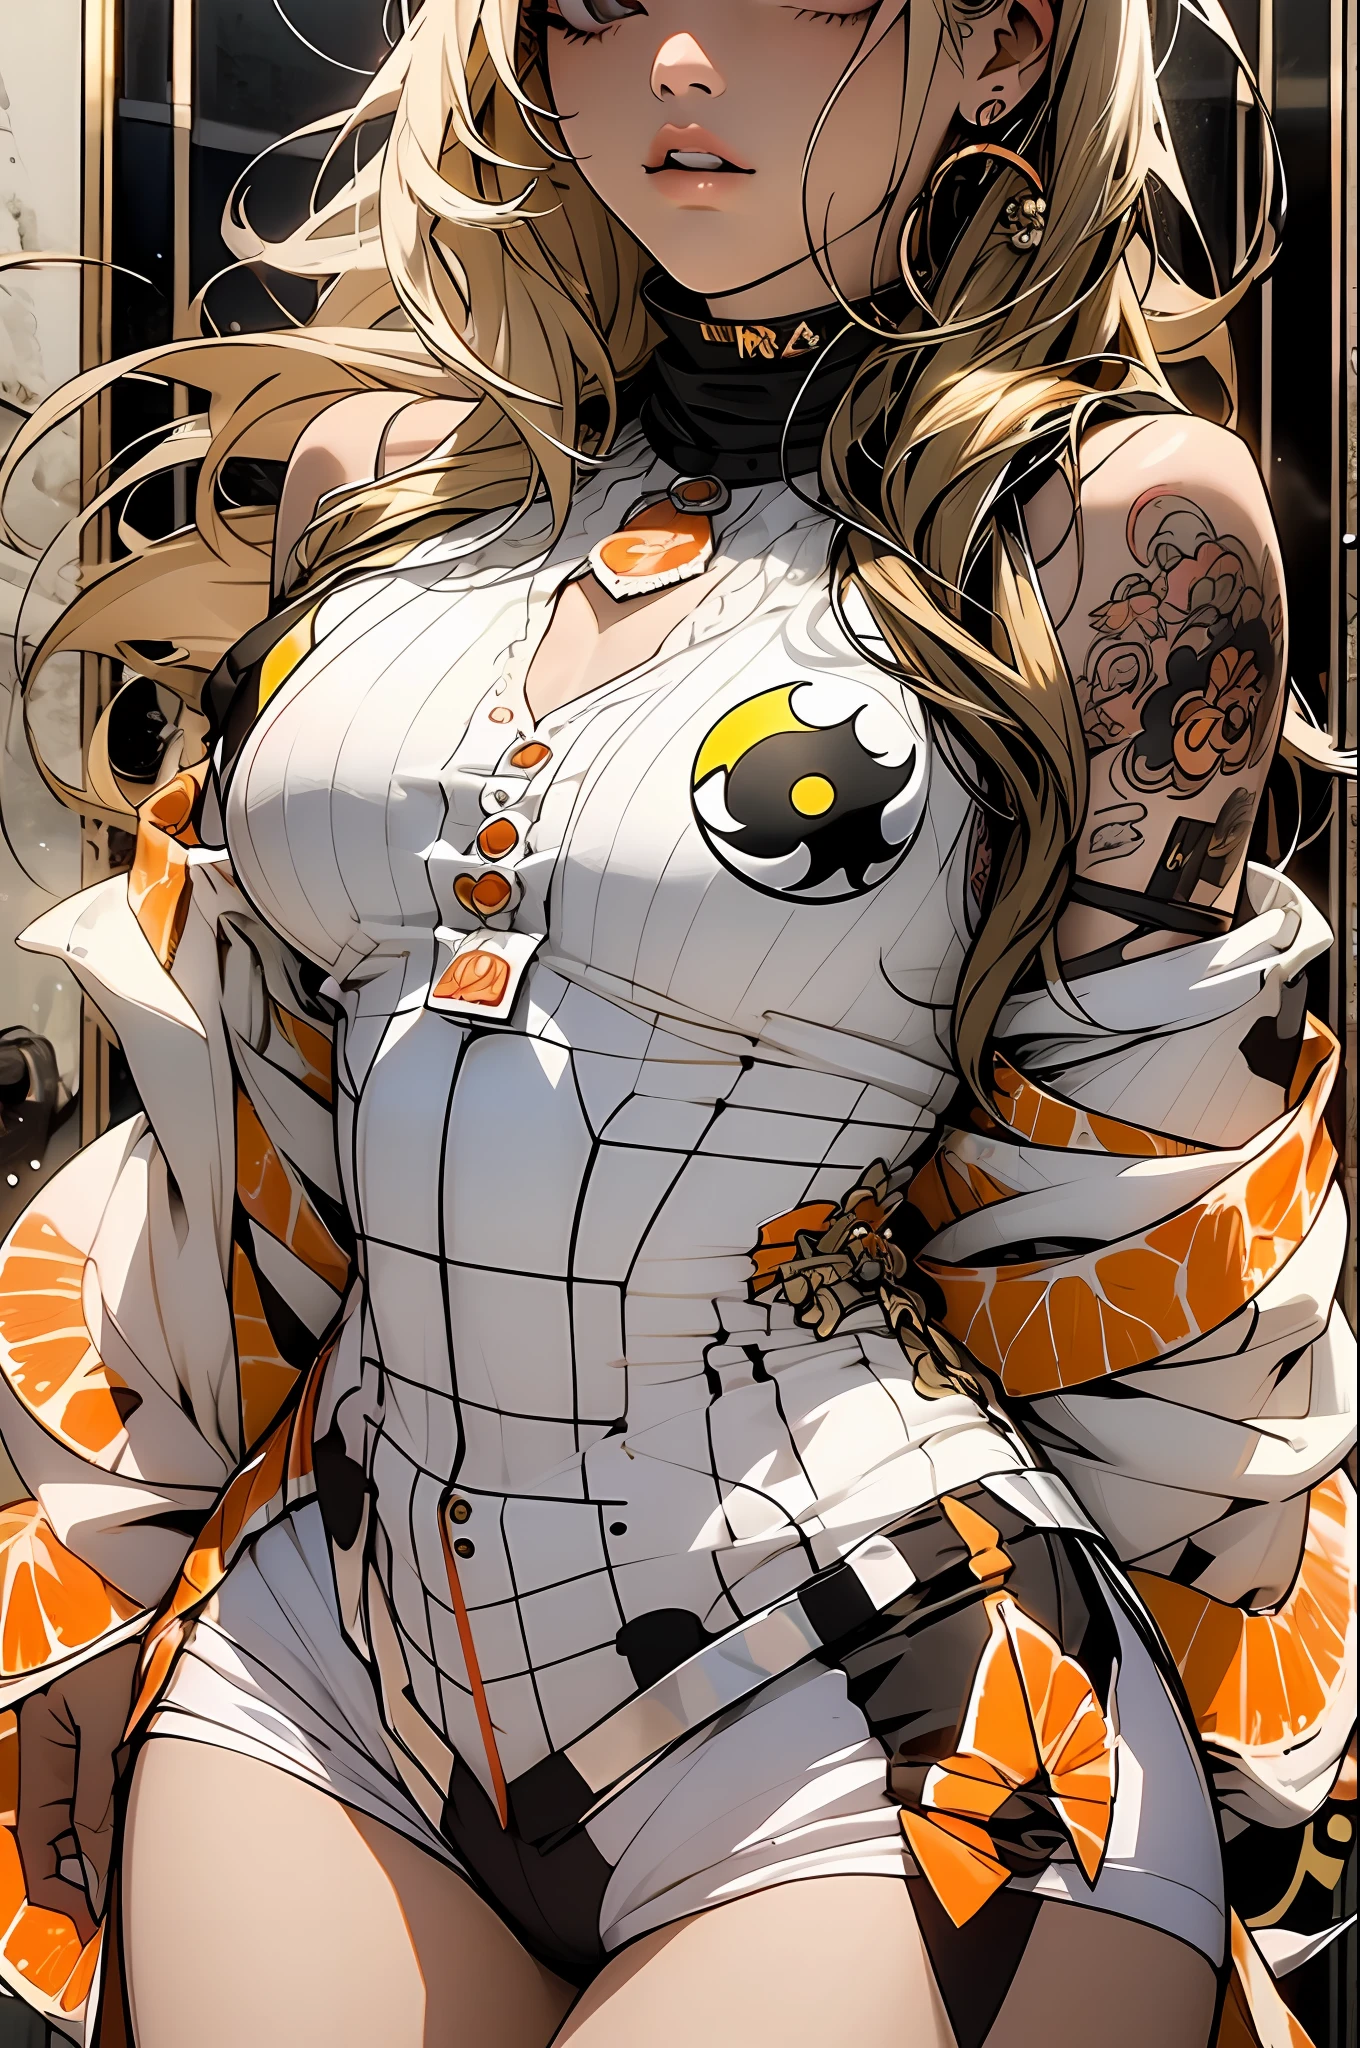 verde: 1.5, orange: 1.1, Weiß: 1.3, Gelb: 1.3, (Yin-Yang-Mädchen), halb weißes, halb dunkles Haar, detaillierte Tattoos, Rüstung des Terrors, transparenter Körper, Farbtupfer im Hintergrund, Kleider